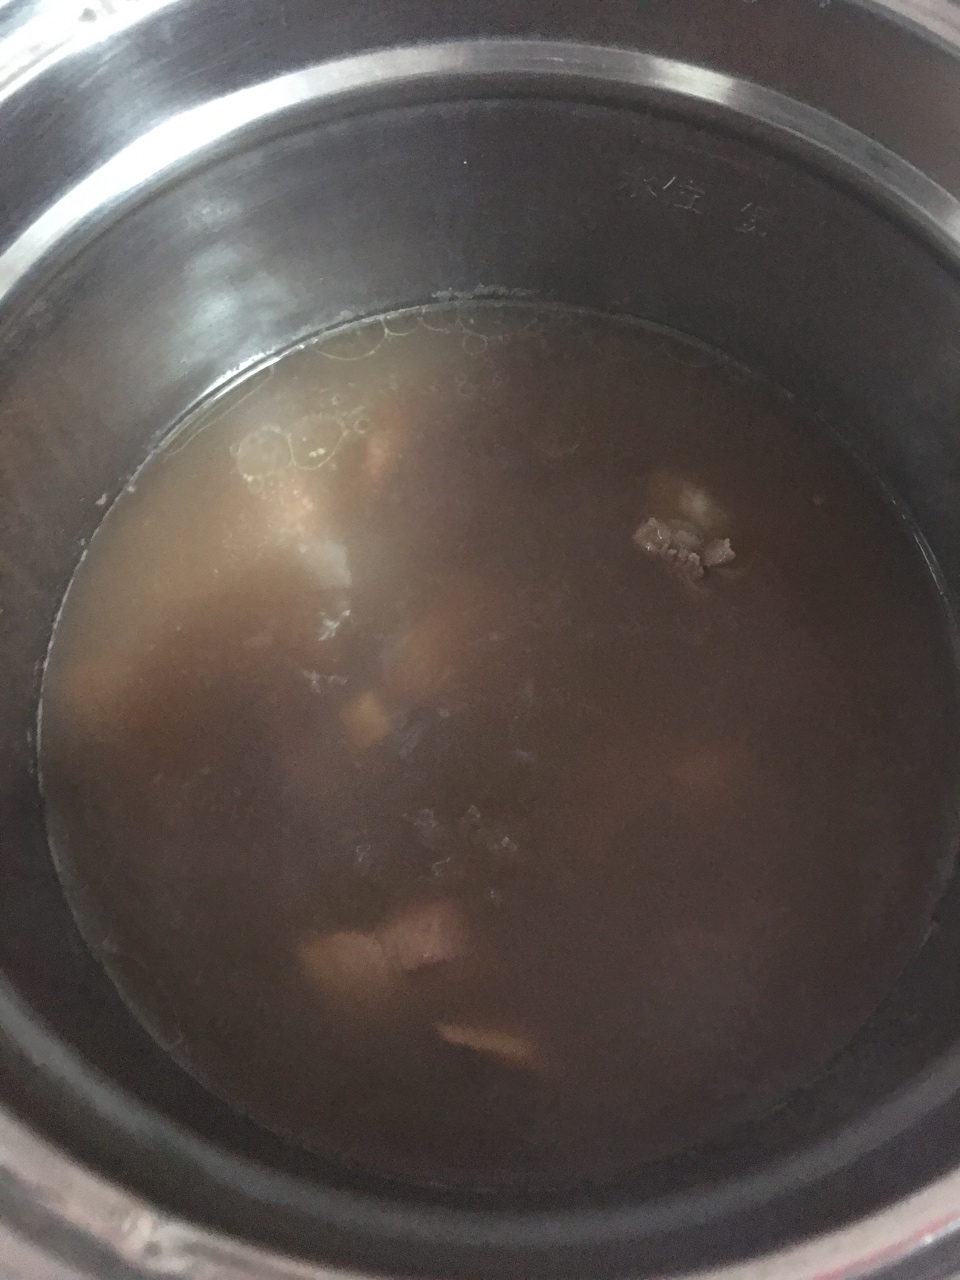 土茯苓猪骨汤的做法